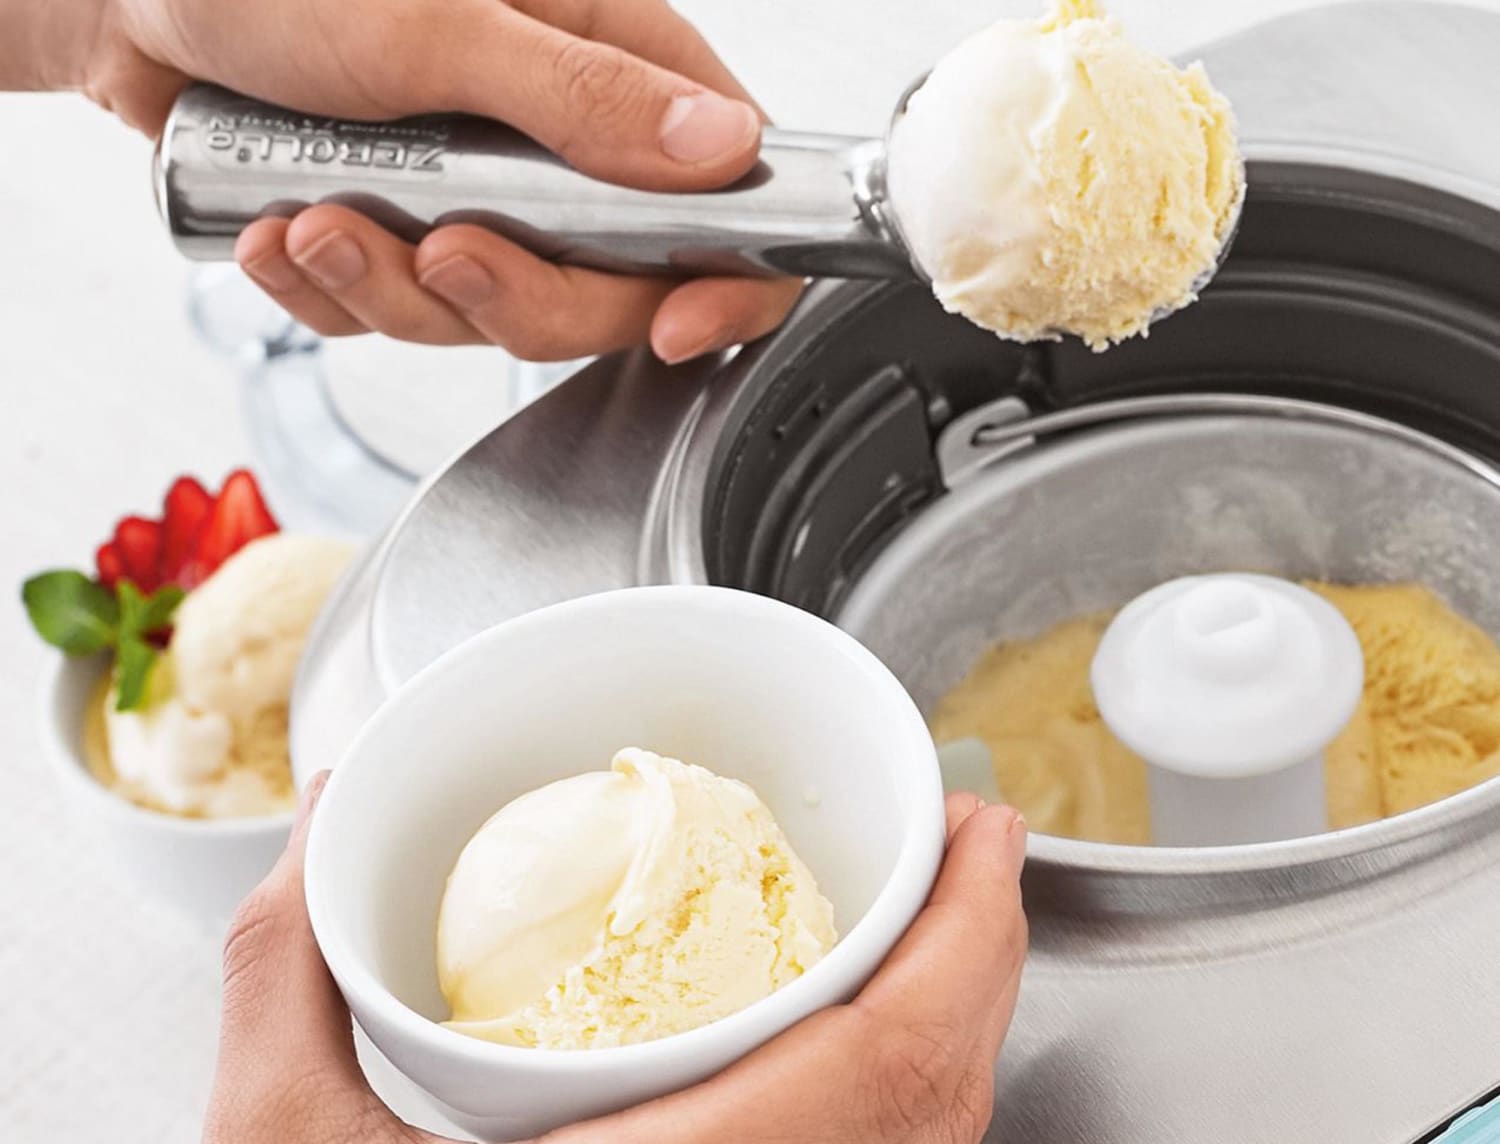 Zeroll Ice Cream Scoop vs. Midnight Ice Cream Scoop – Opi's Creamery